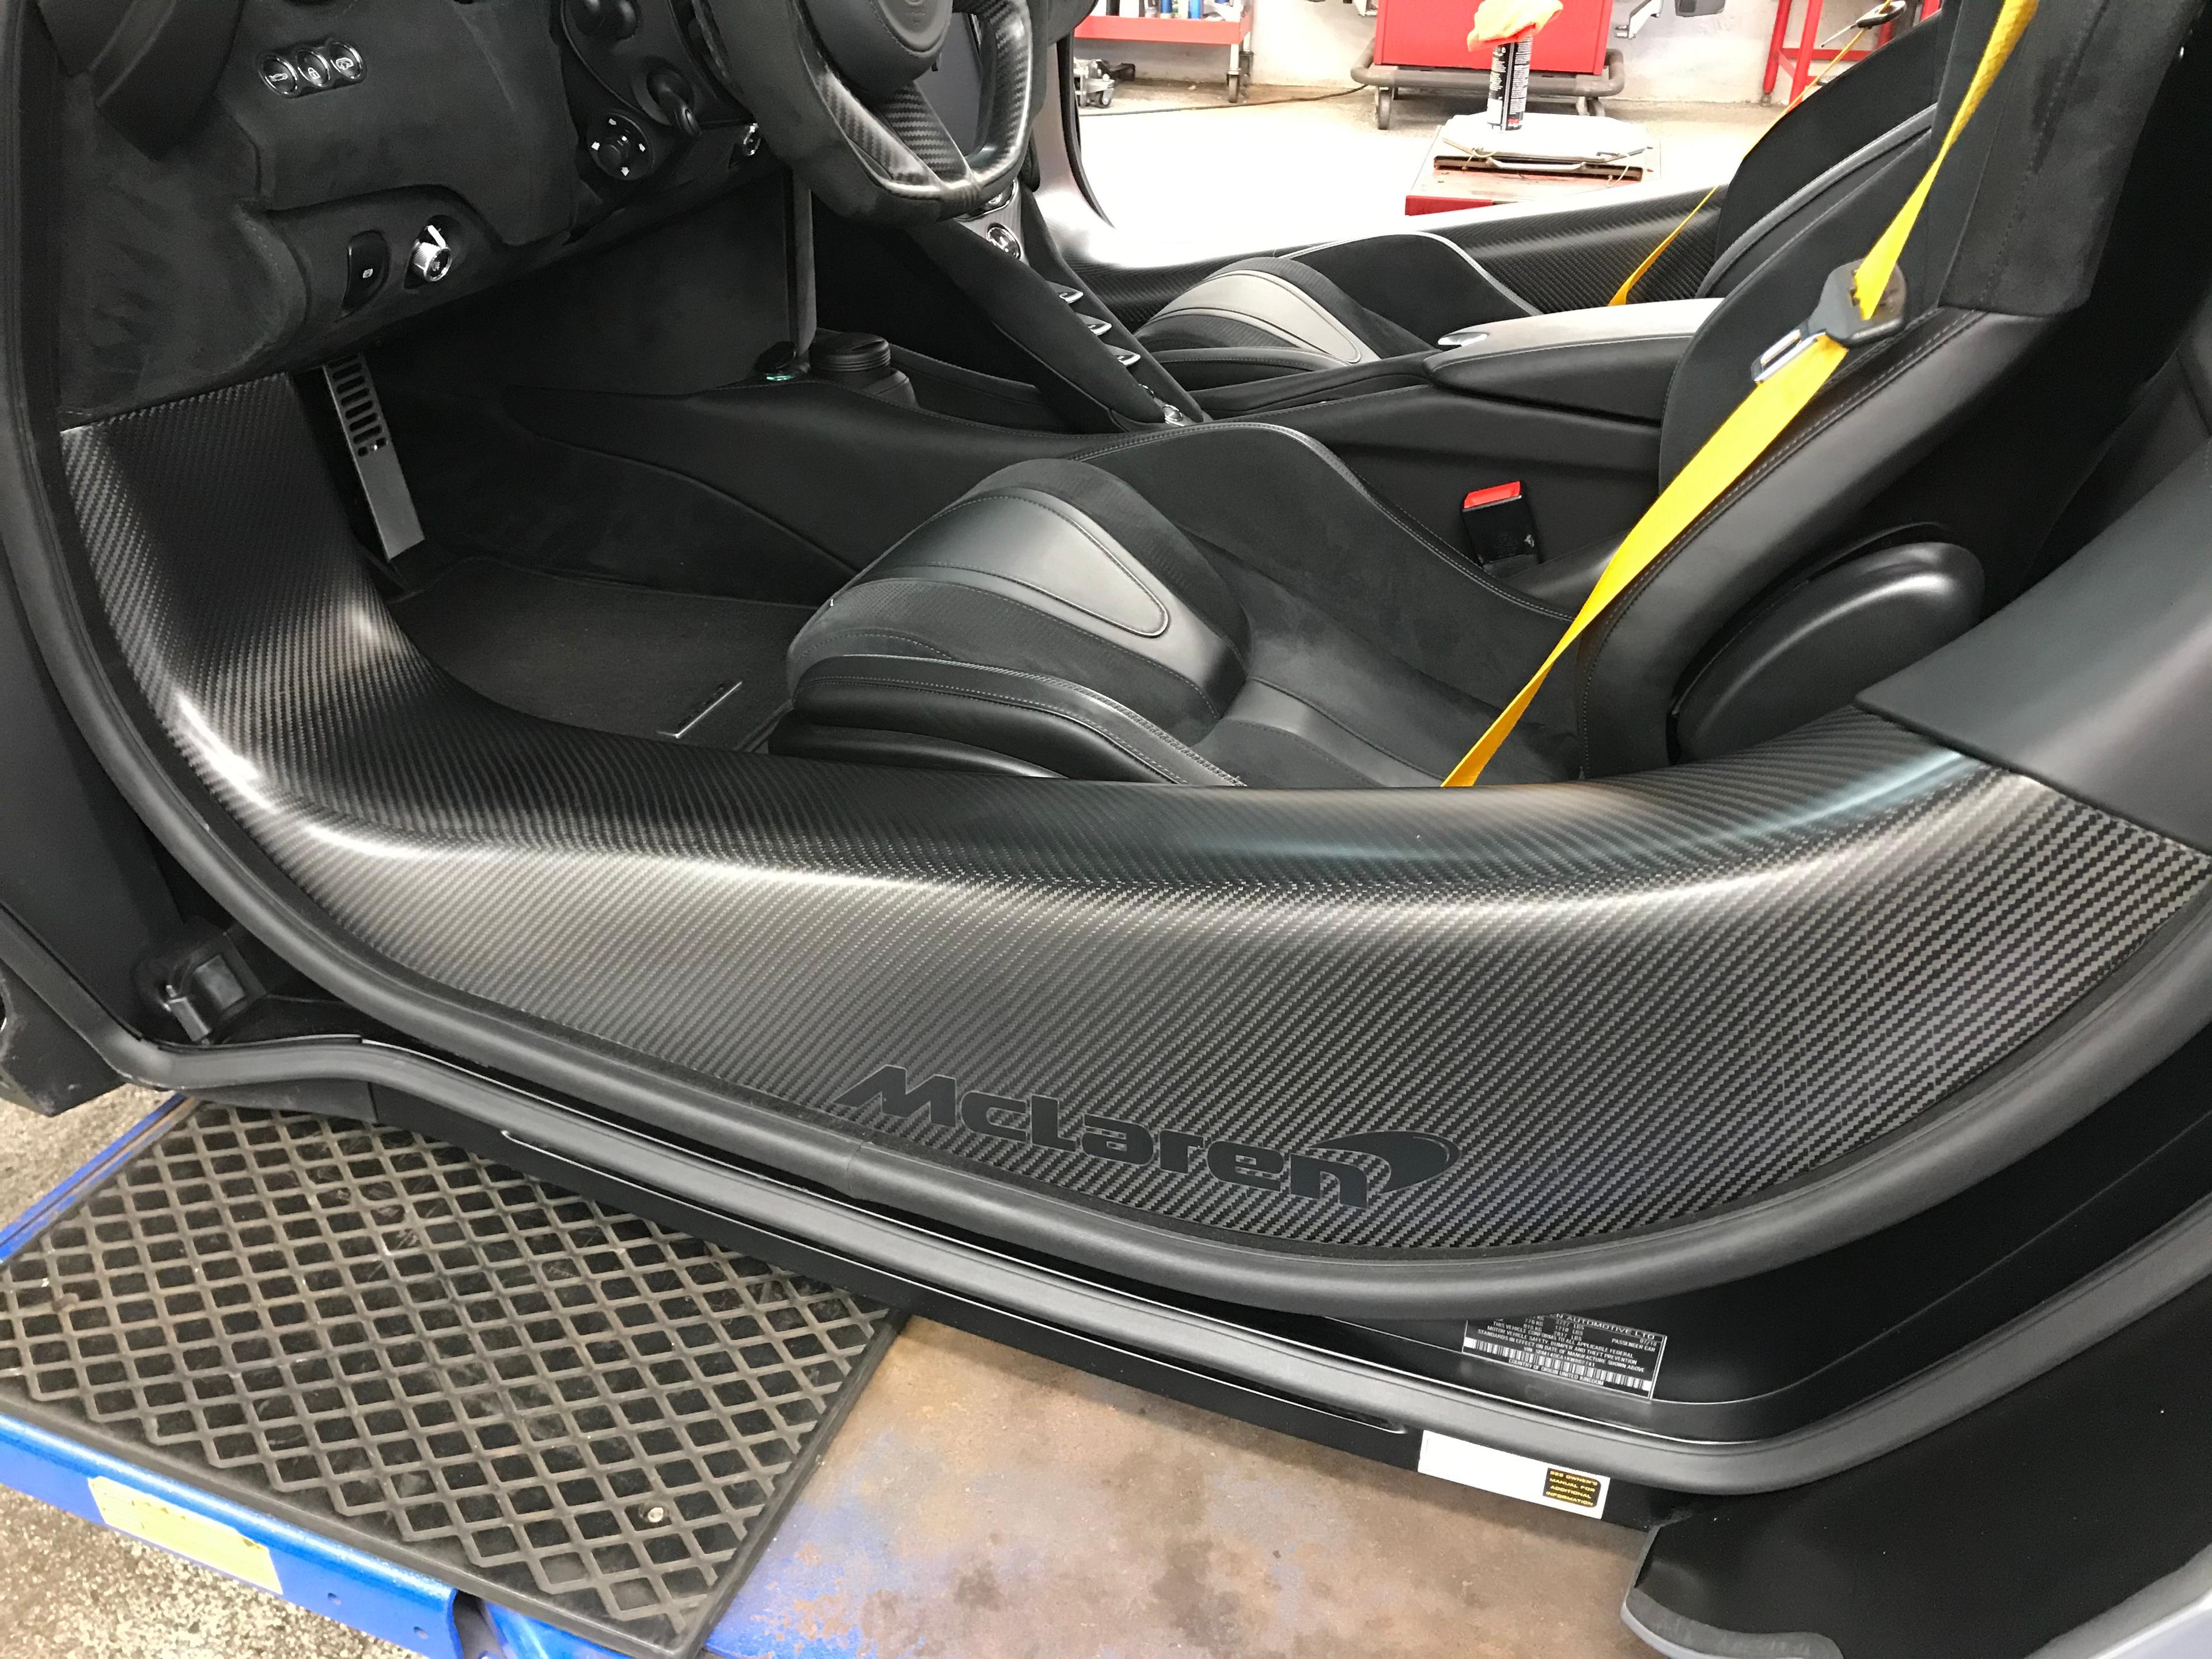 McLaren carbon fiber door inserts